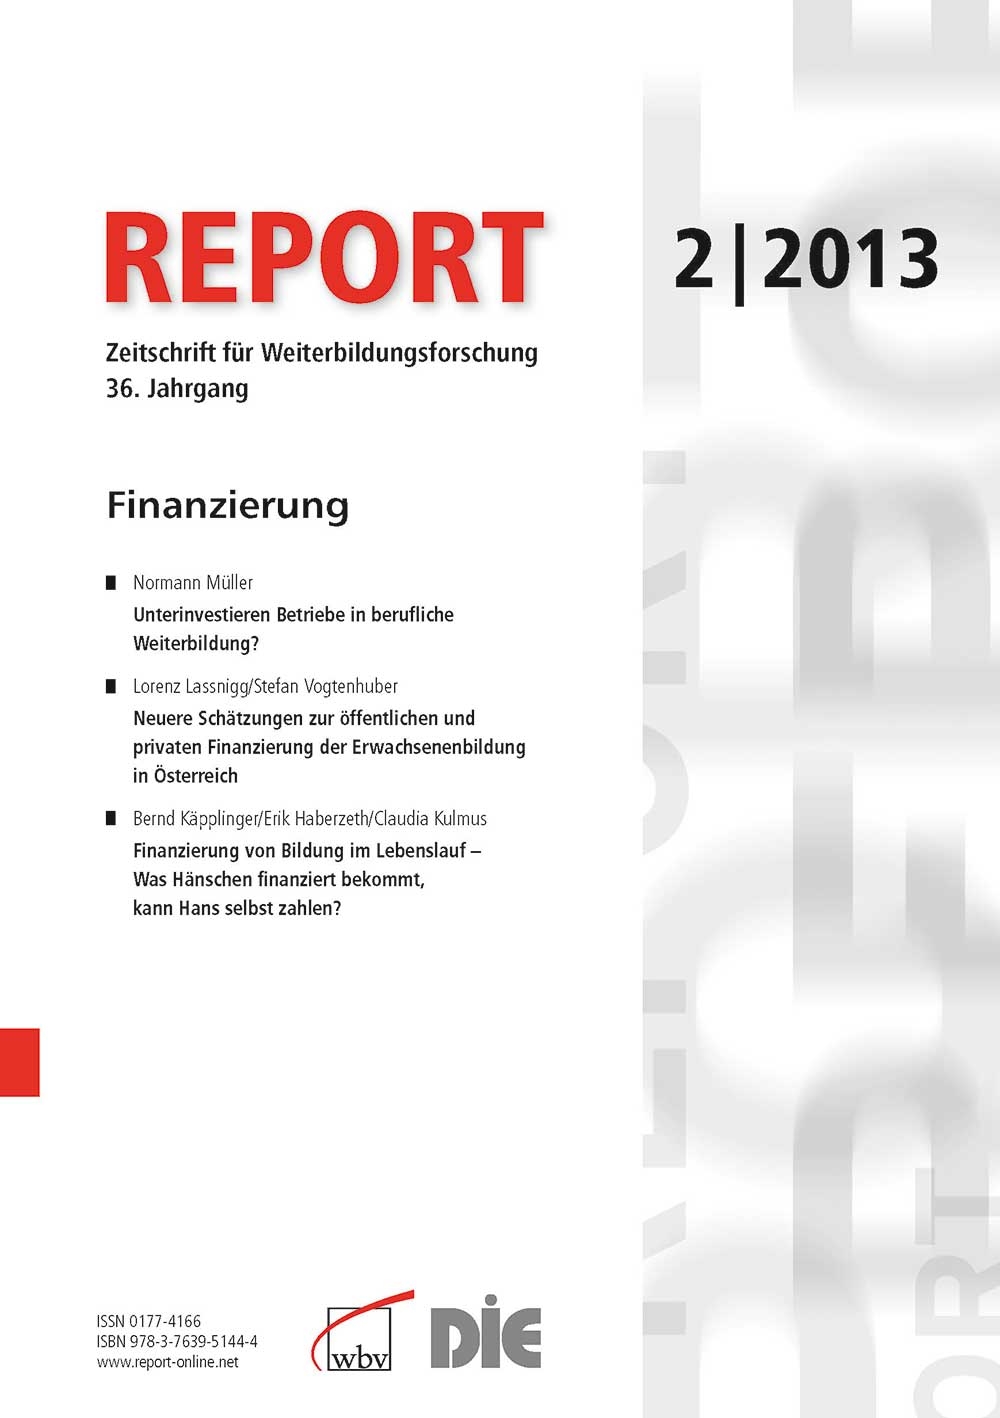 REPORT - Zeitschrift für Weiterbildungsforschung 02/2013